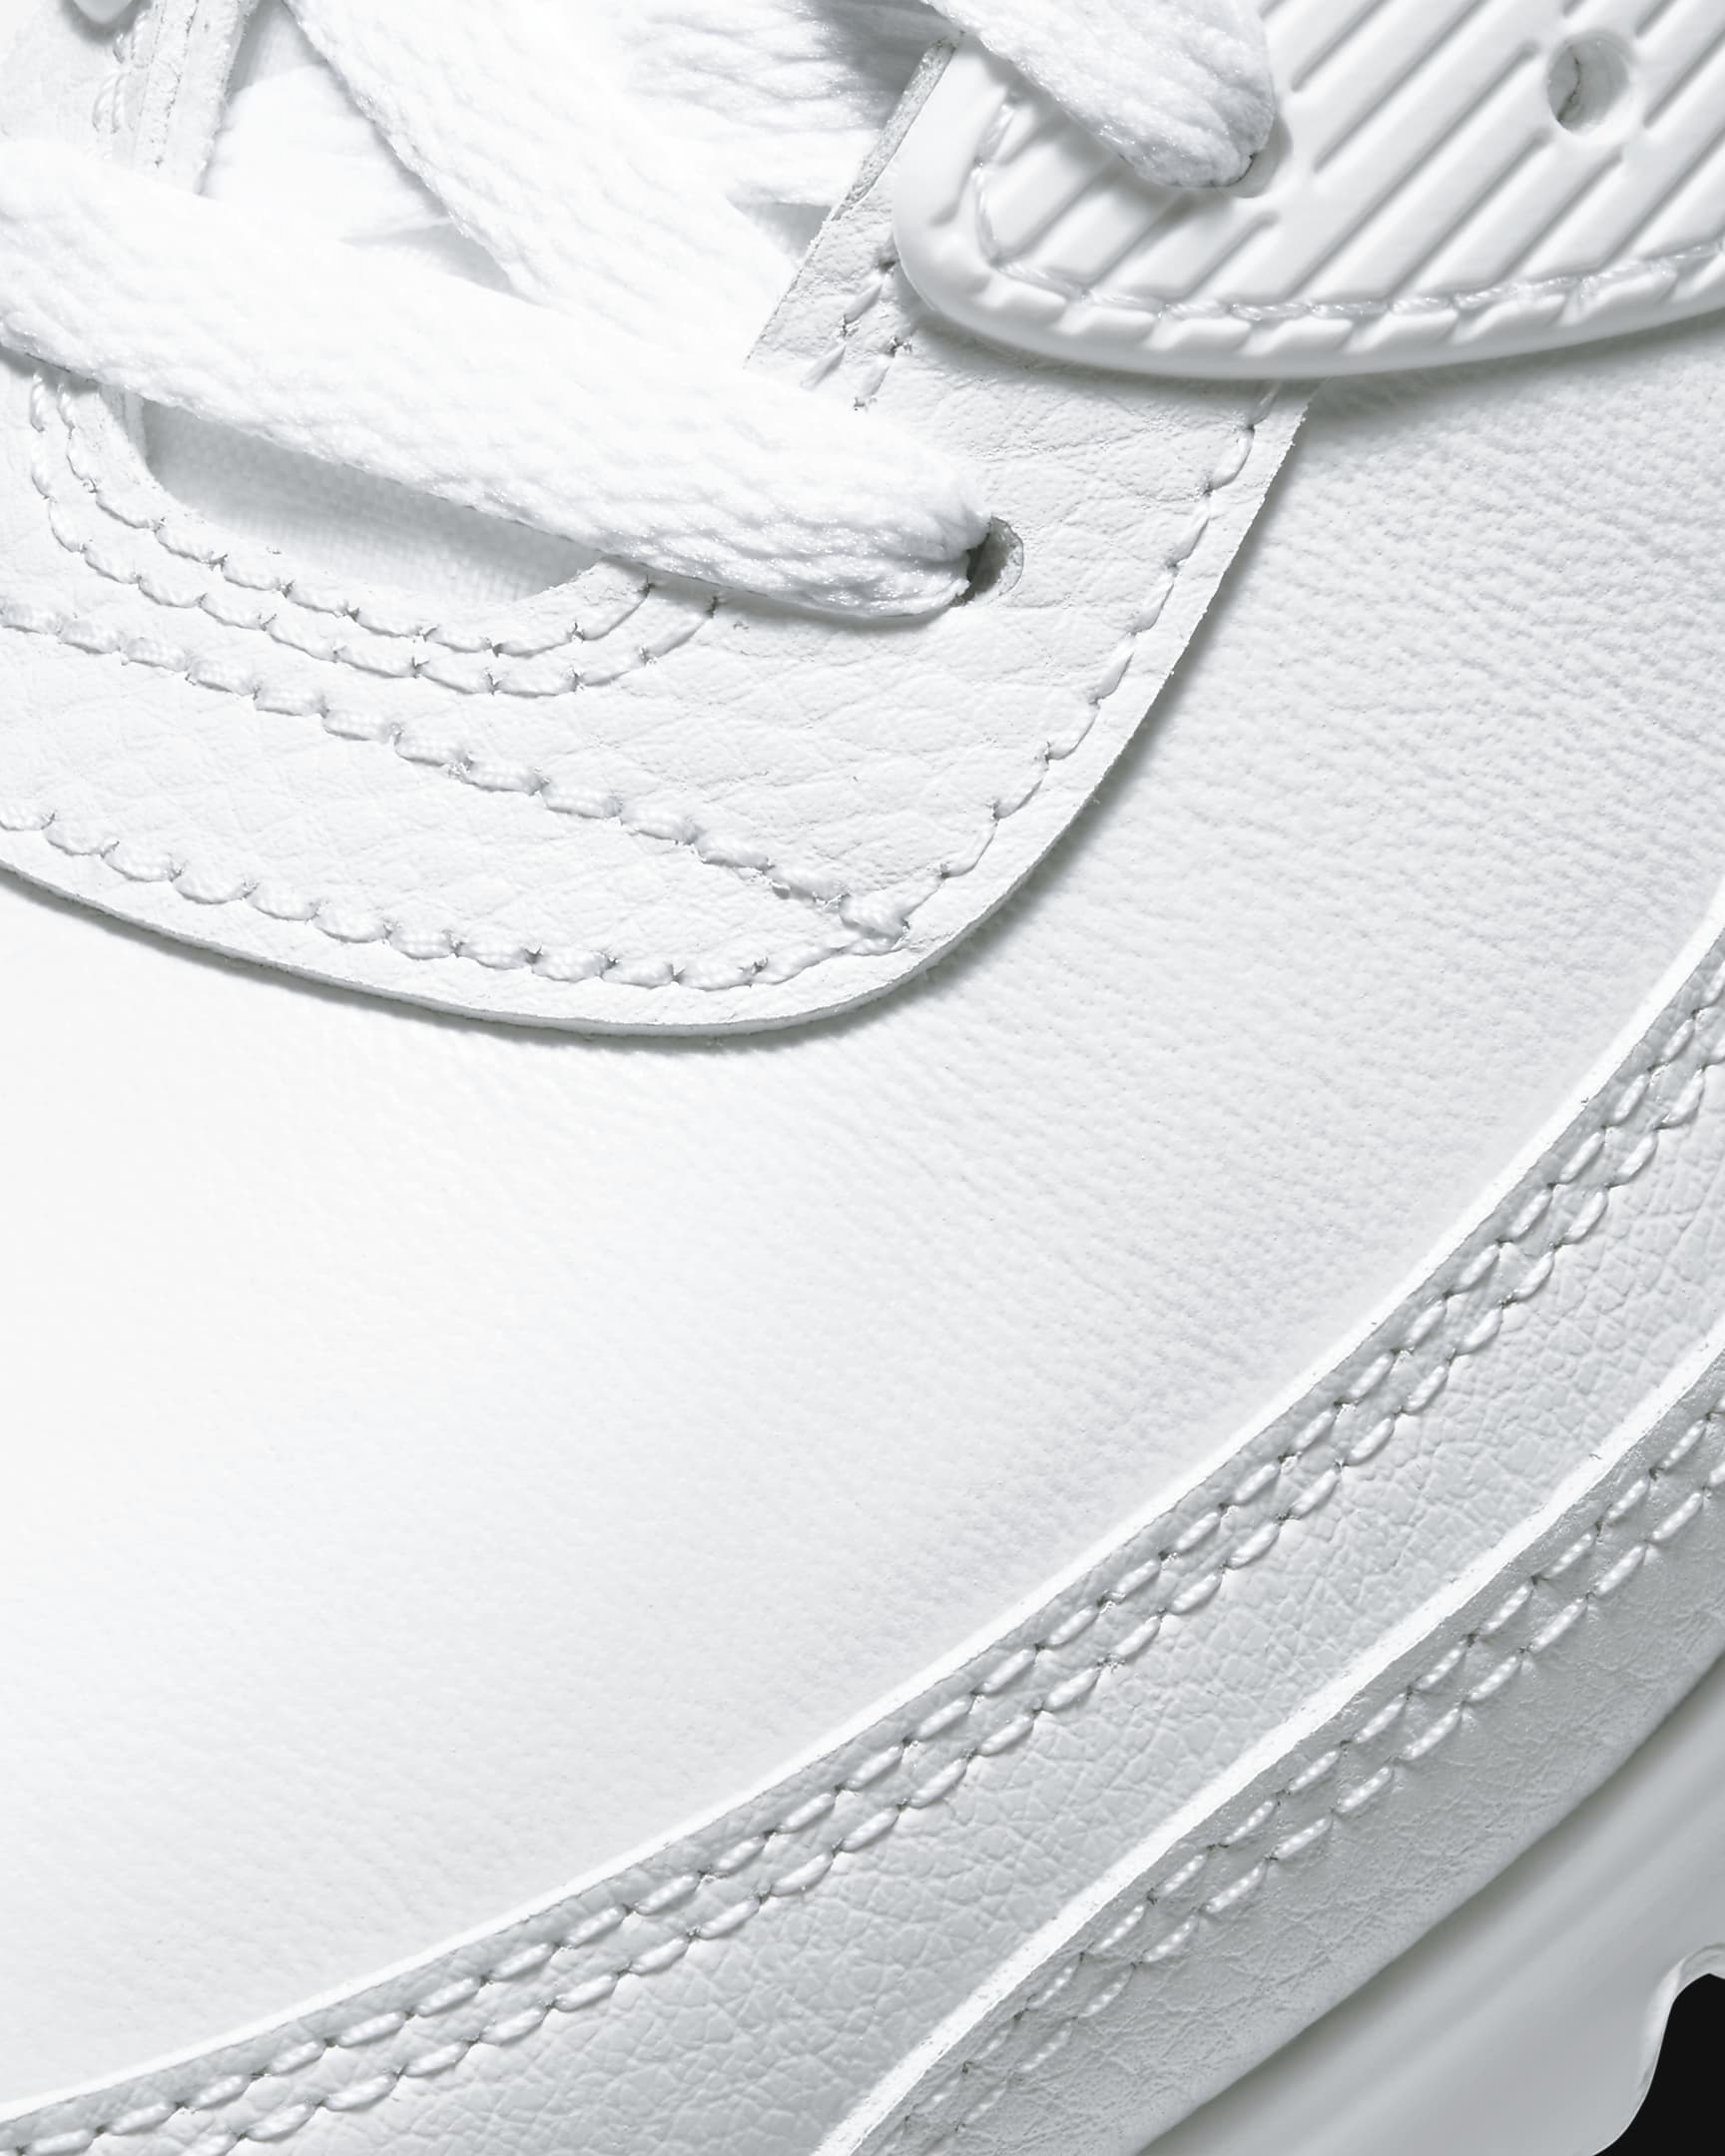 Air Max 90 LTR Men's Shoes - White/White/White